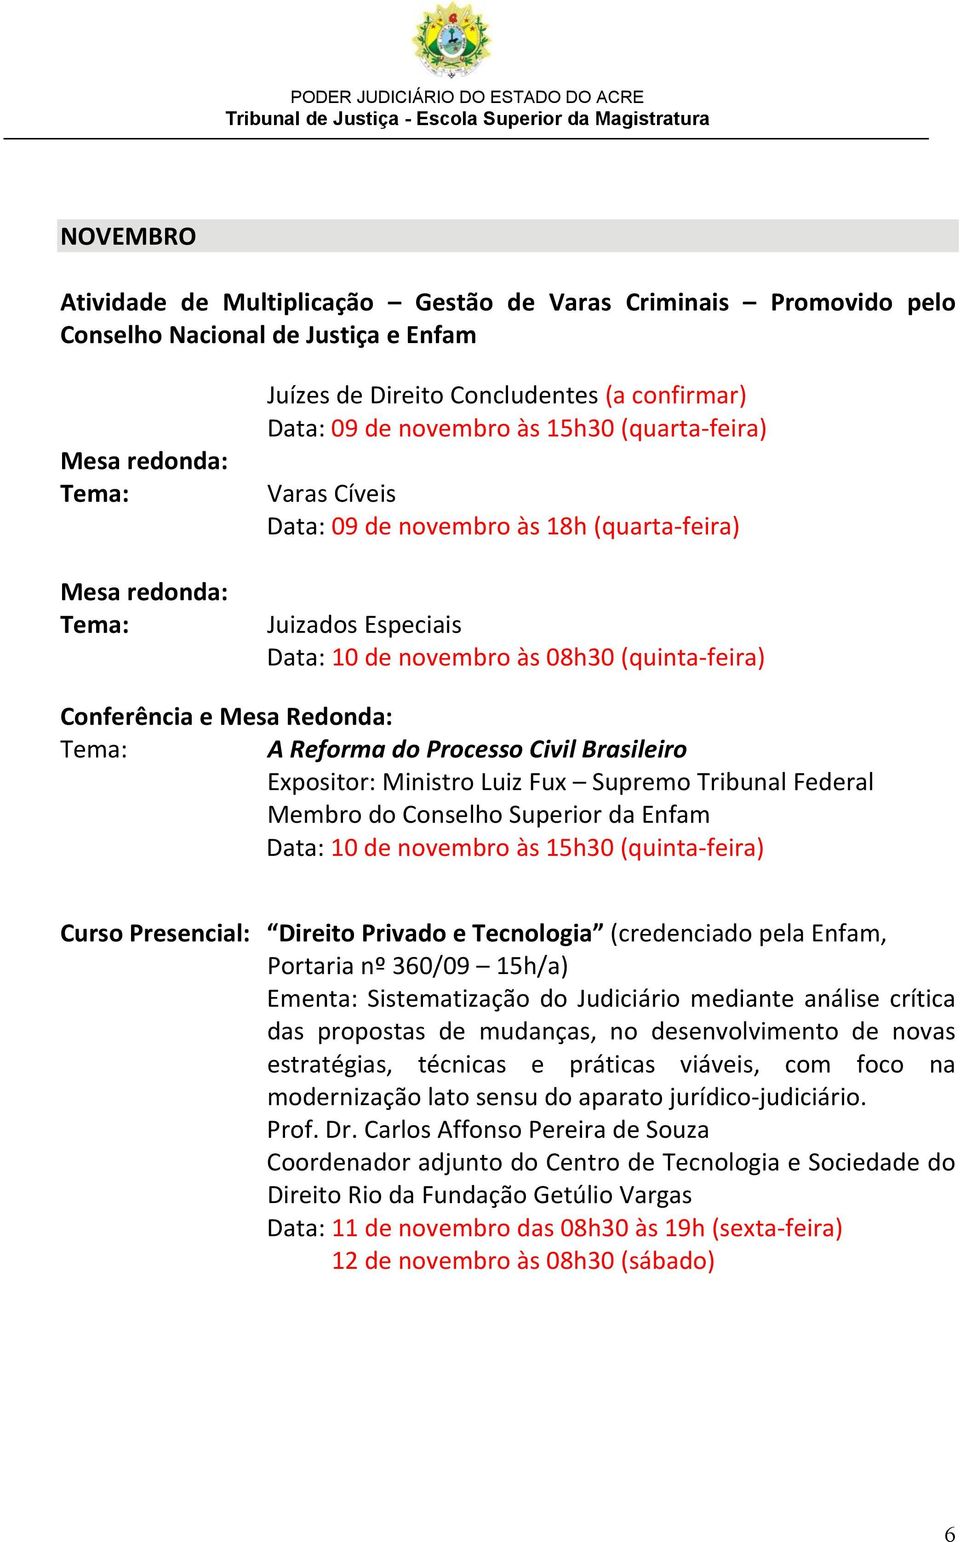 Processo Civil Brasileiro Expositor: Ministro Luiz Fux Supremo Tribunal Federal Membro do Conselho Superior da Enfam Data: 10 de novembro às 15h30 (quinta-feira) Curso Presencial: Direito Privado e